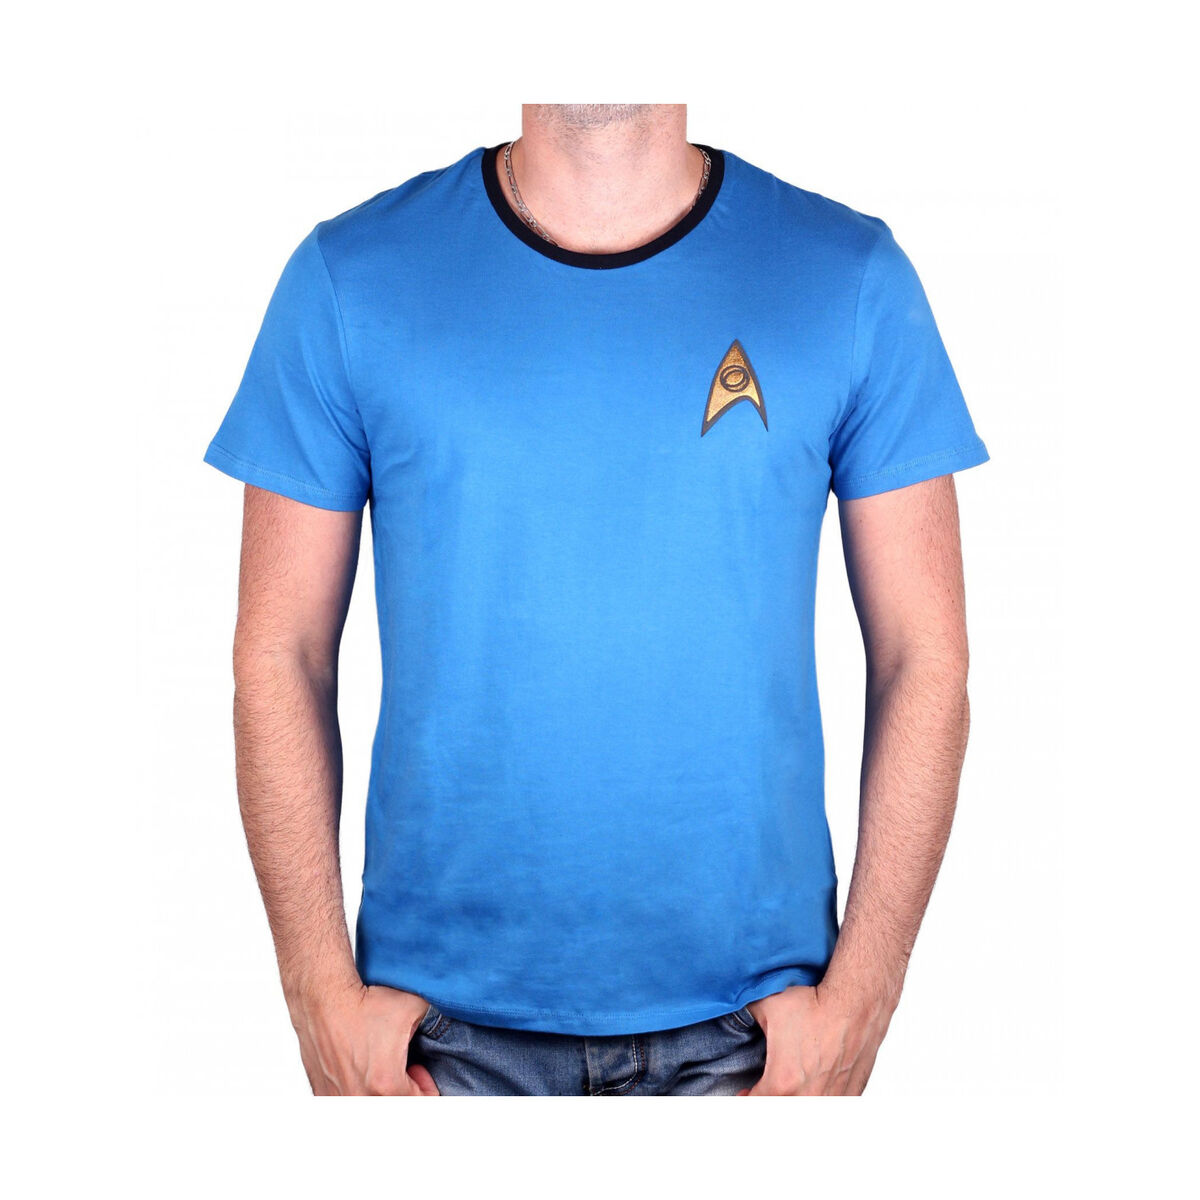 star-trek-t-shirt-blue-spock-c